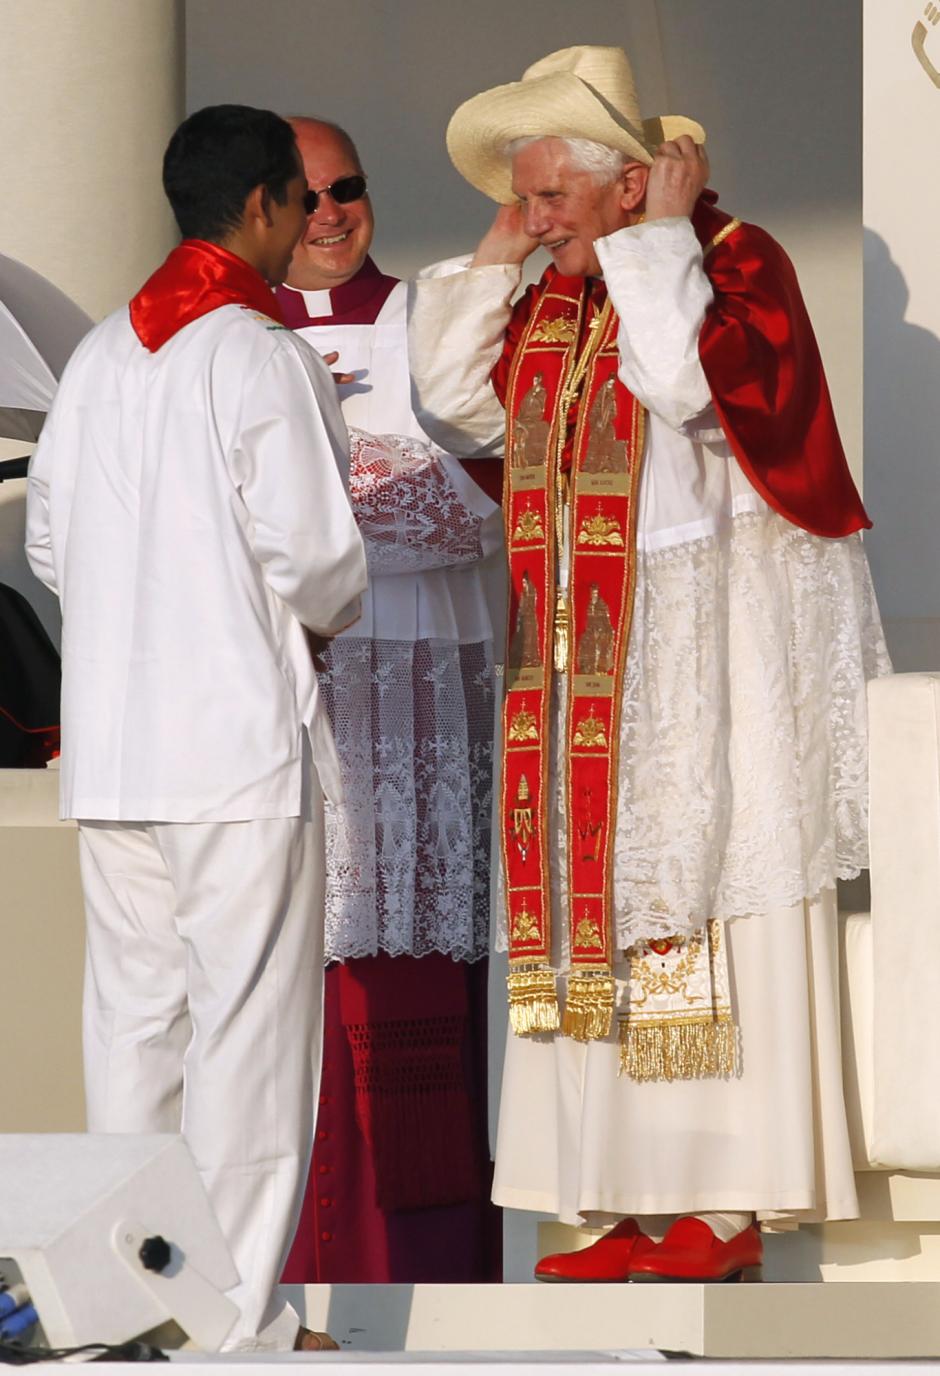 El Papa Benedicto XVI se coloca un sombrero, obsequio de la juventud de Latinoamérica durante la JMJ de Madrid en 2011